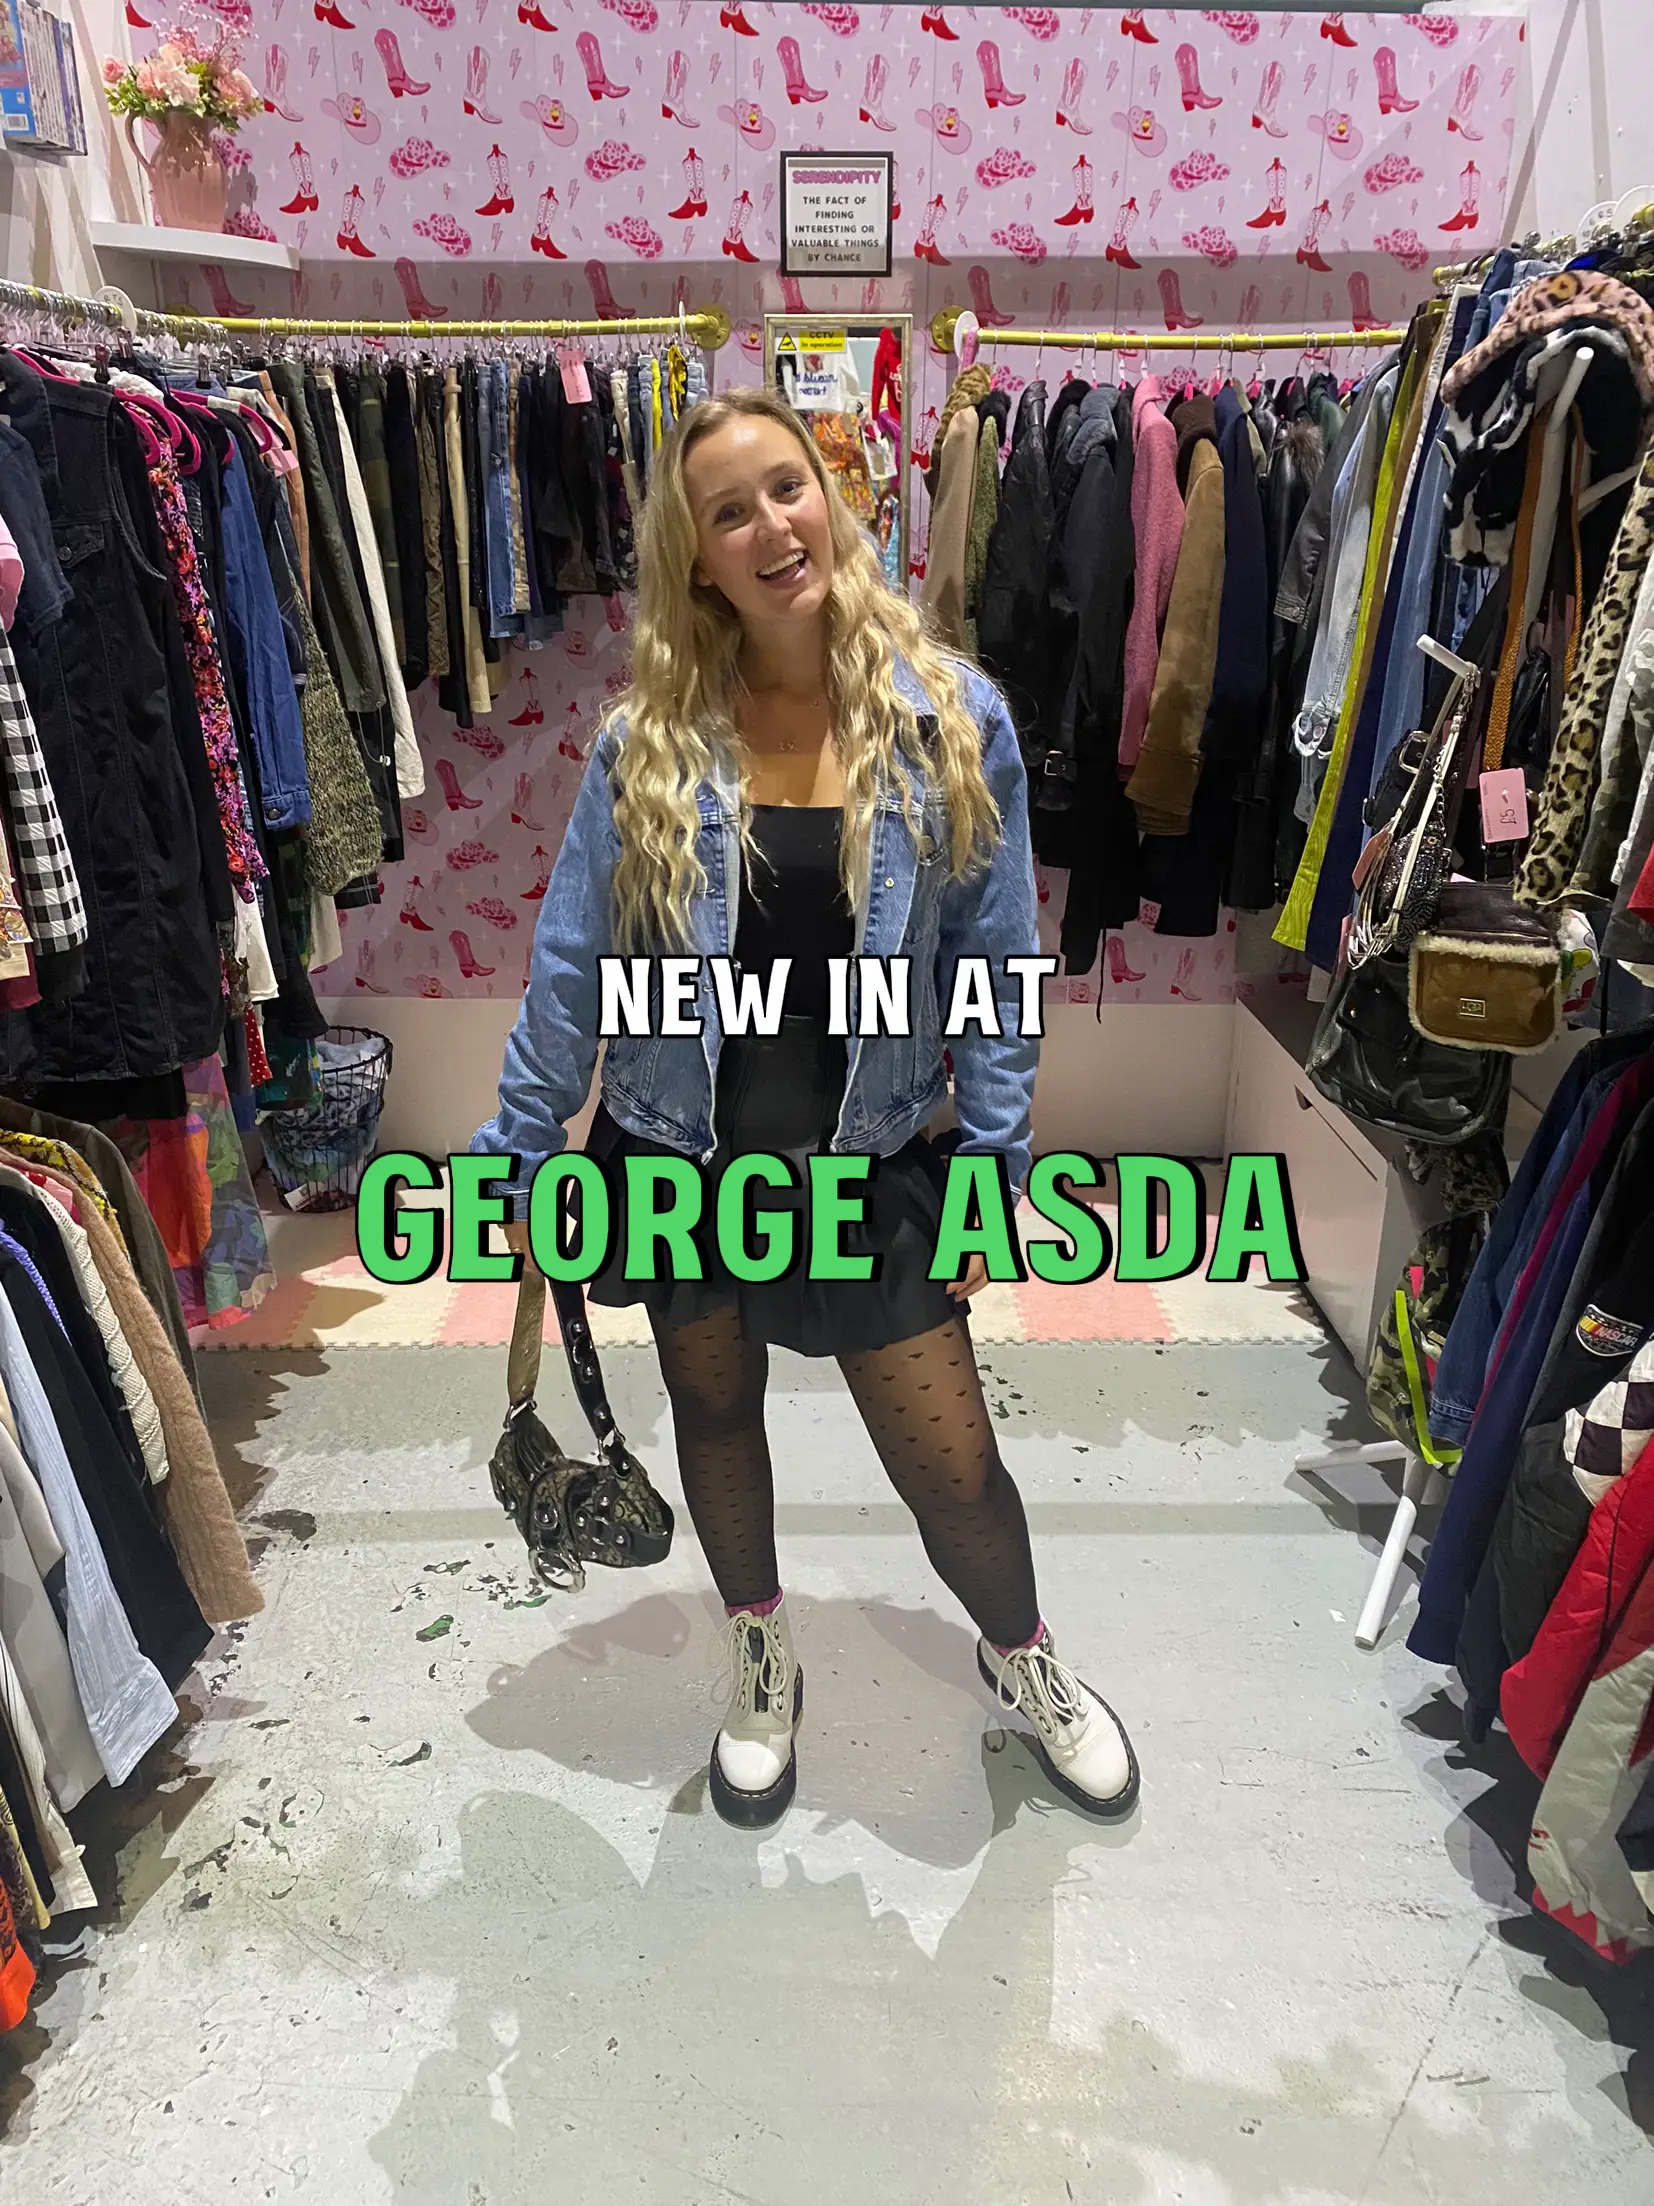 Asda George Plus Size Clothing Haul, Size 18 - 22